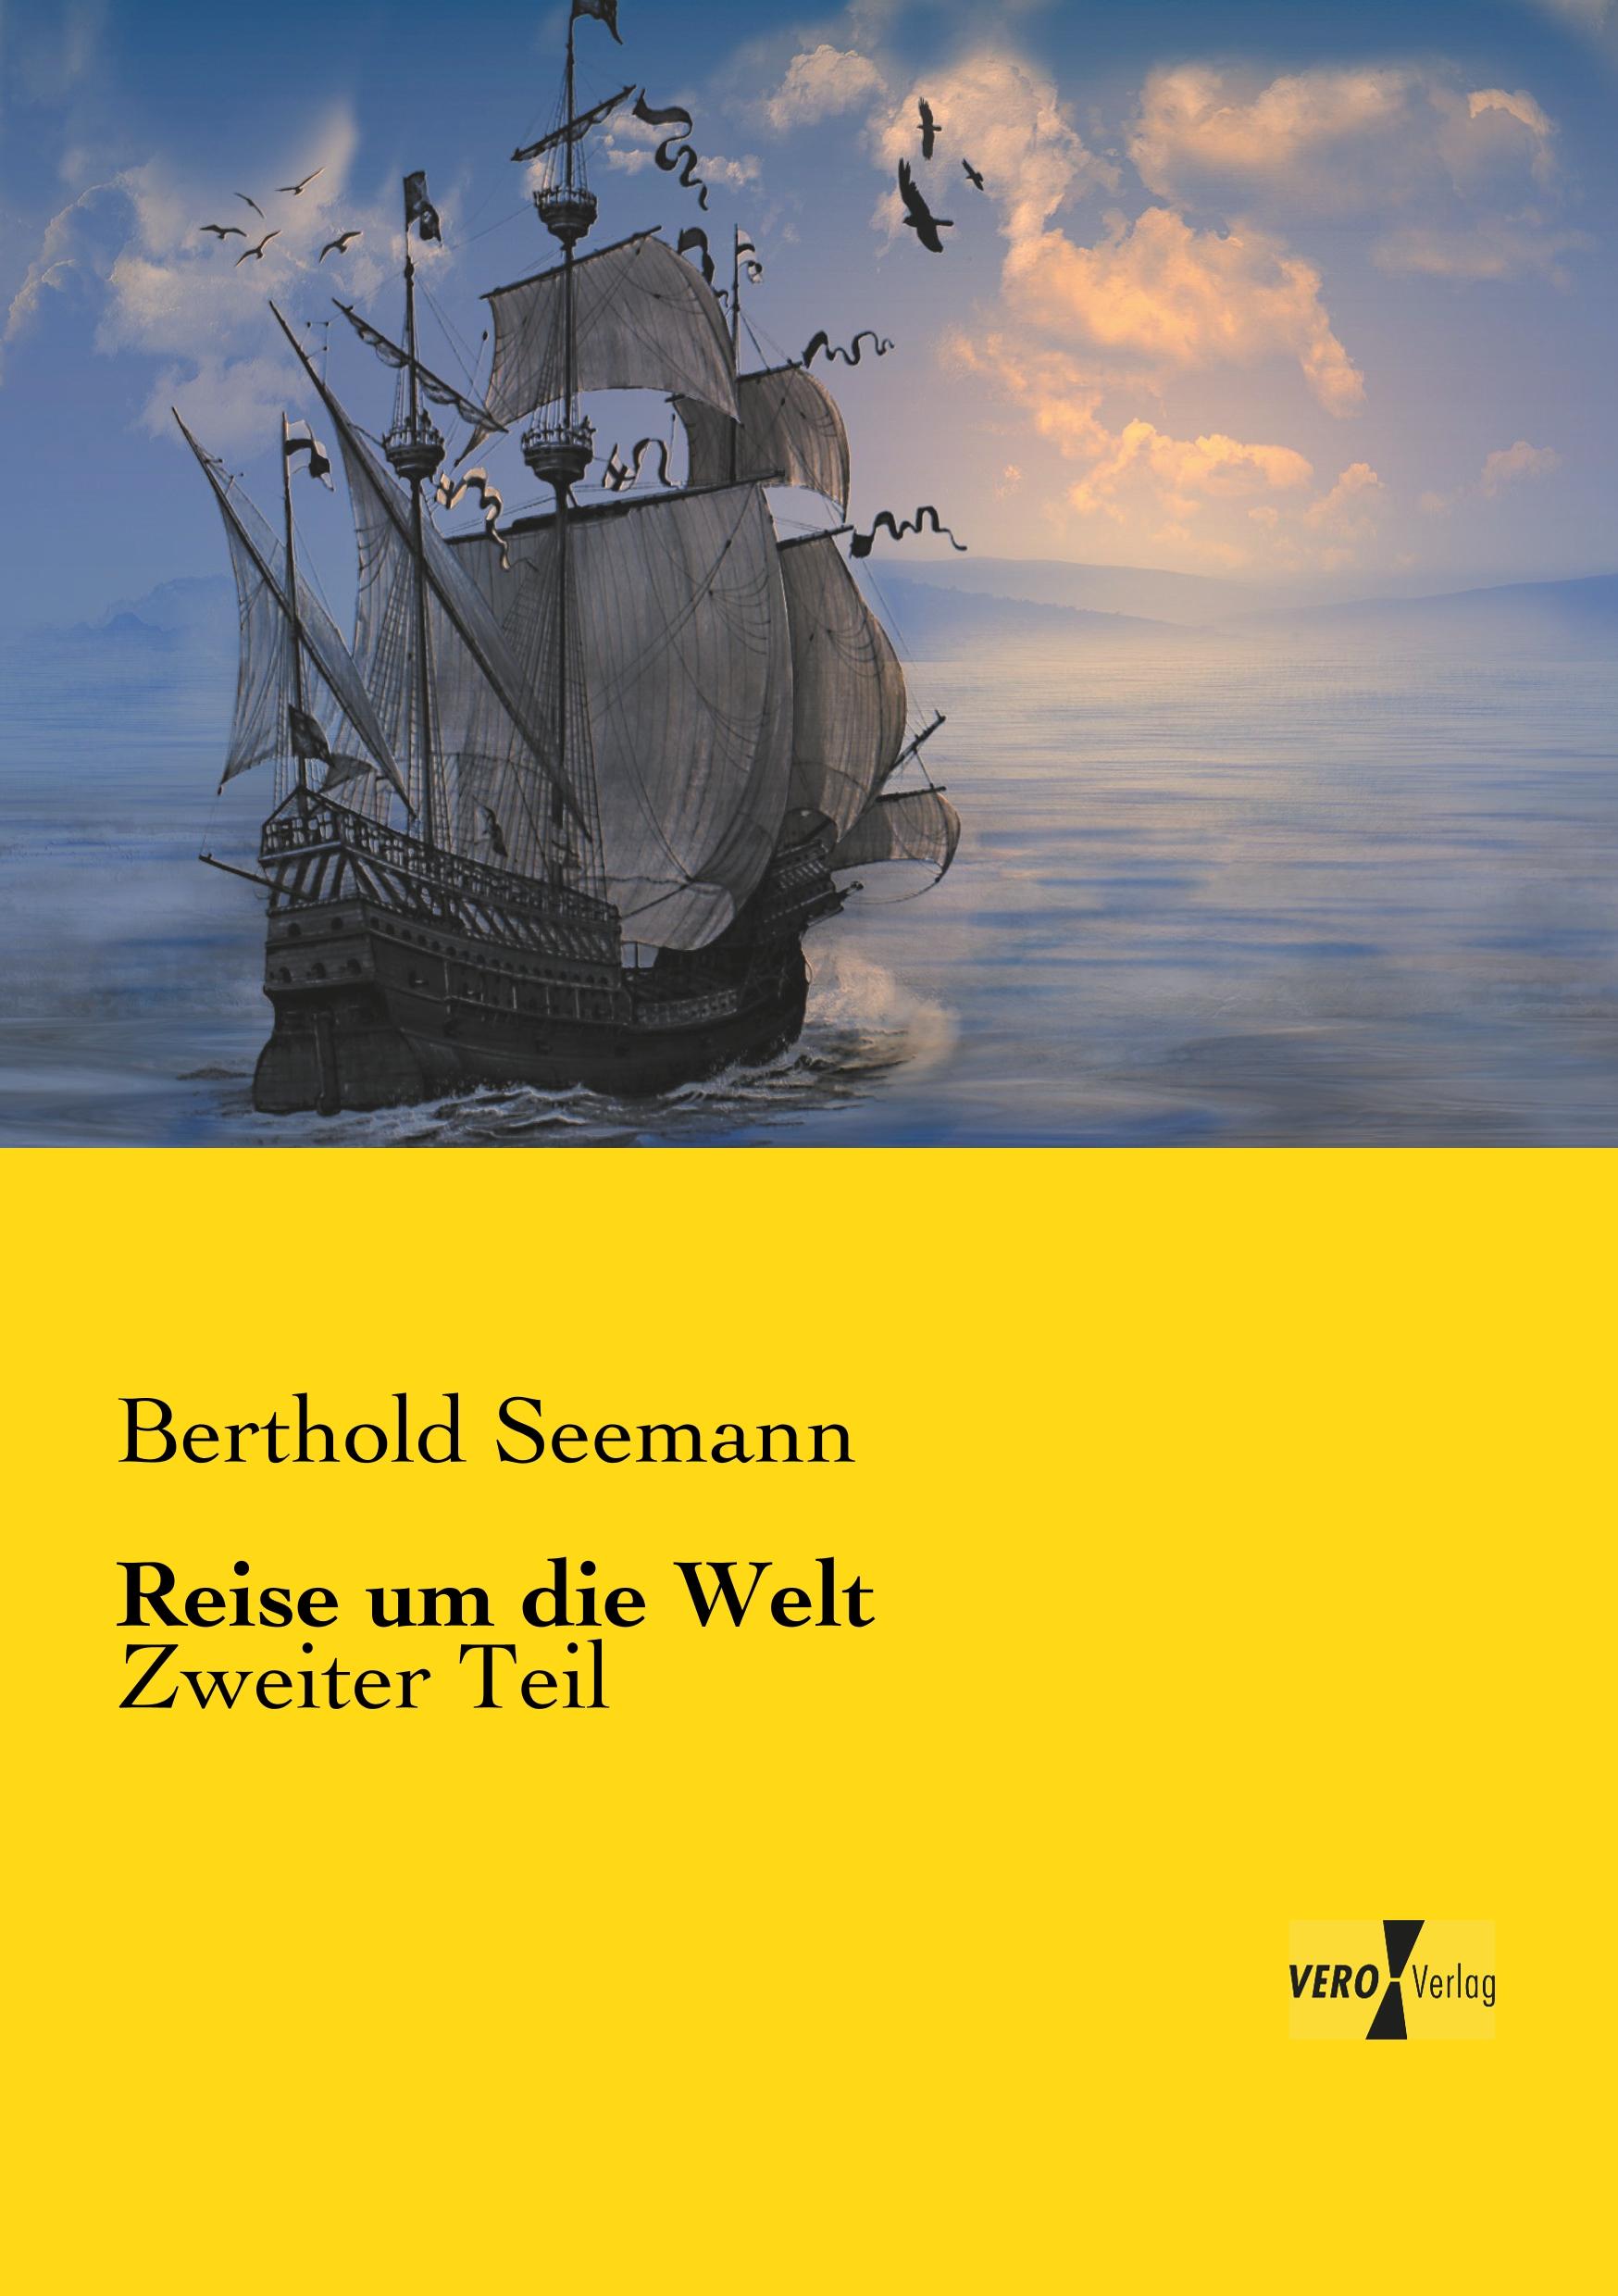 Reise um die Welt | Zweiter Teil | Berthold Seemann | Taschenbuch | Paperback | 308 S. | Deutsch | 2019 | Vero Verlag | EAN 9783737203227 - Seemann, Berthold